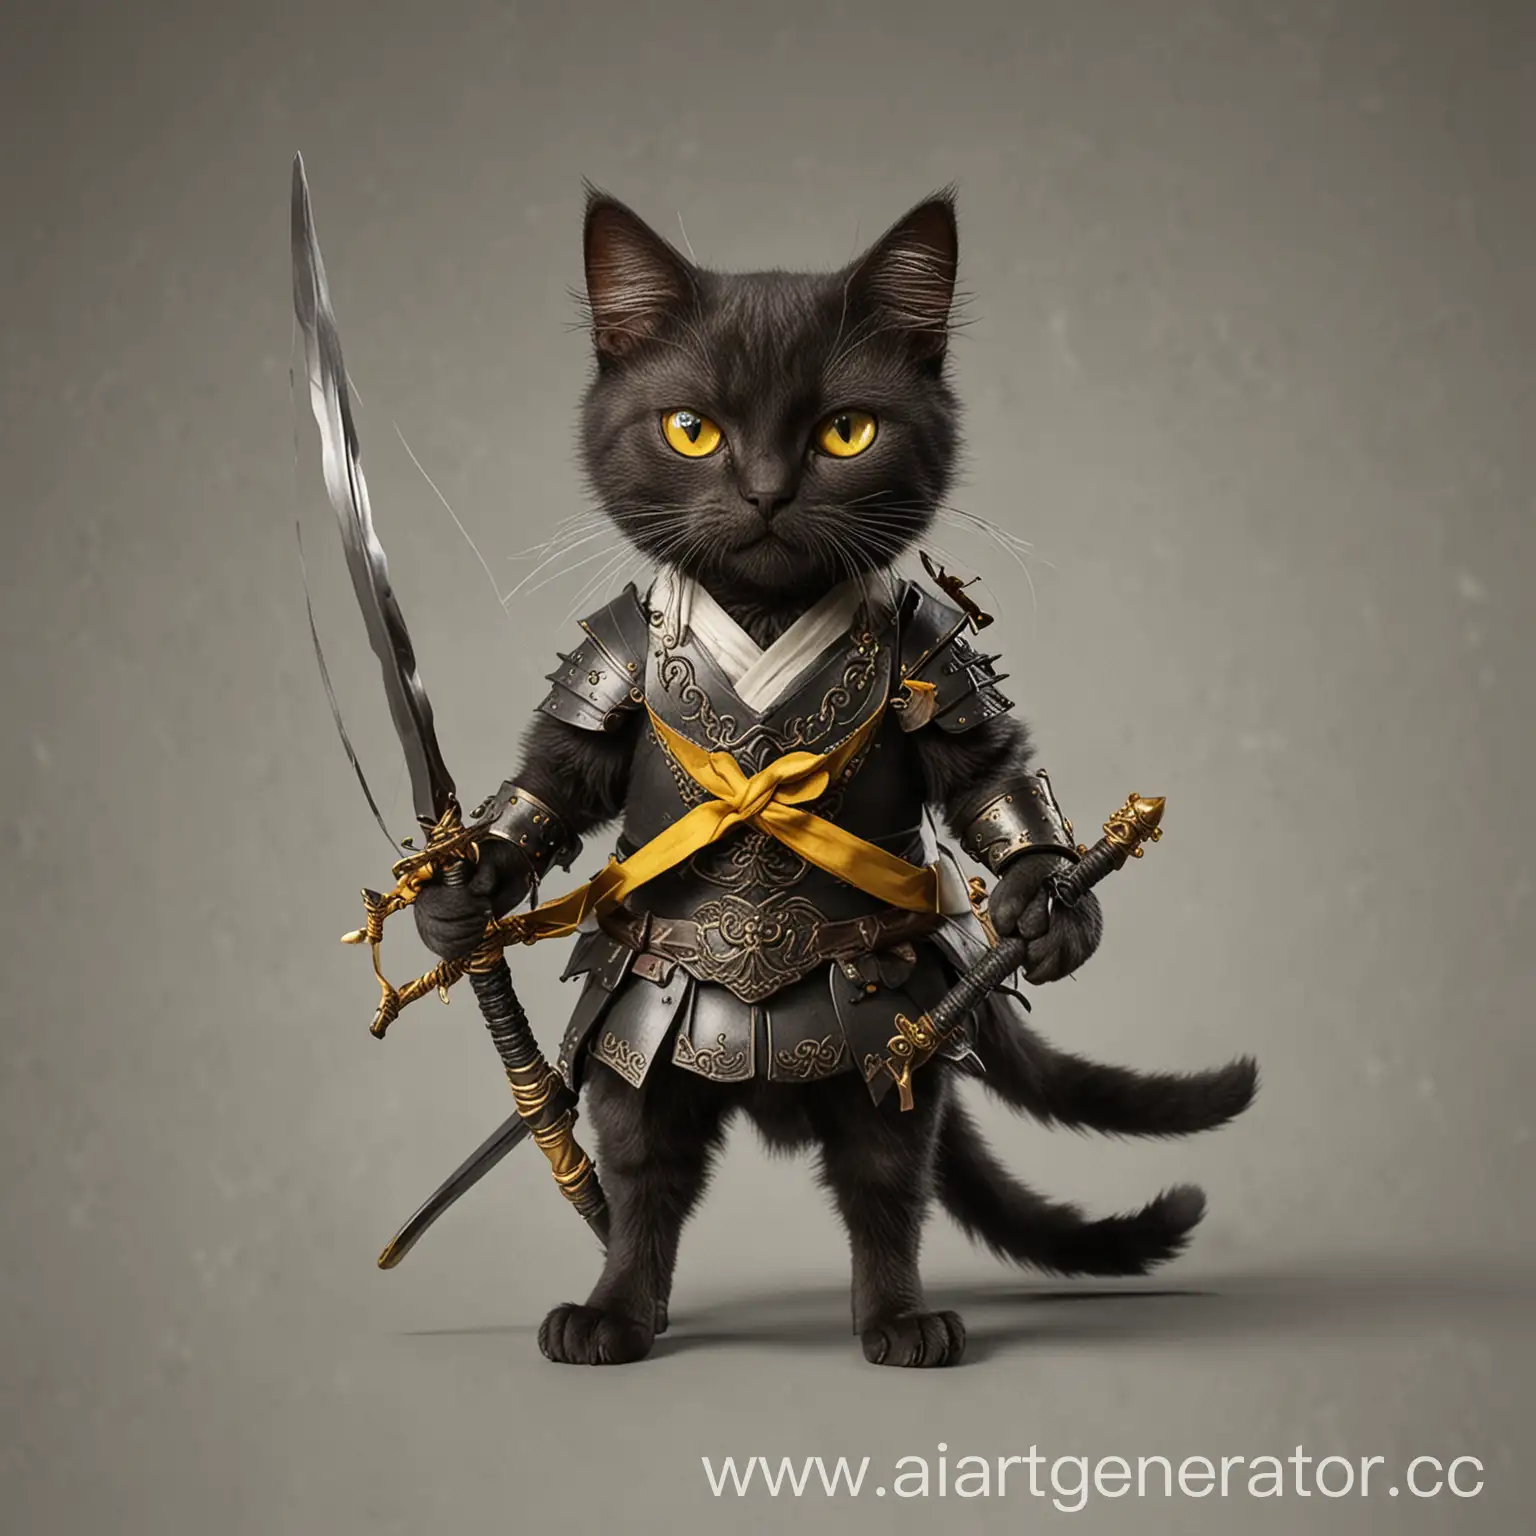 кошка на 2 лапах черного цвета и желтыми глазами, маленького размера, с длинным луком  и 2 мечами
